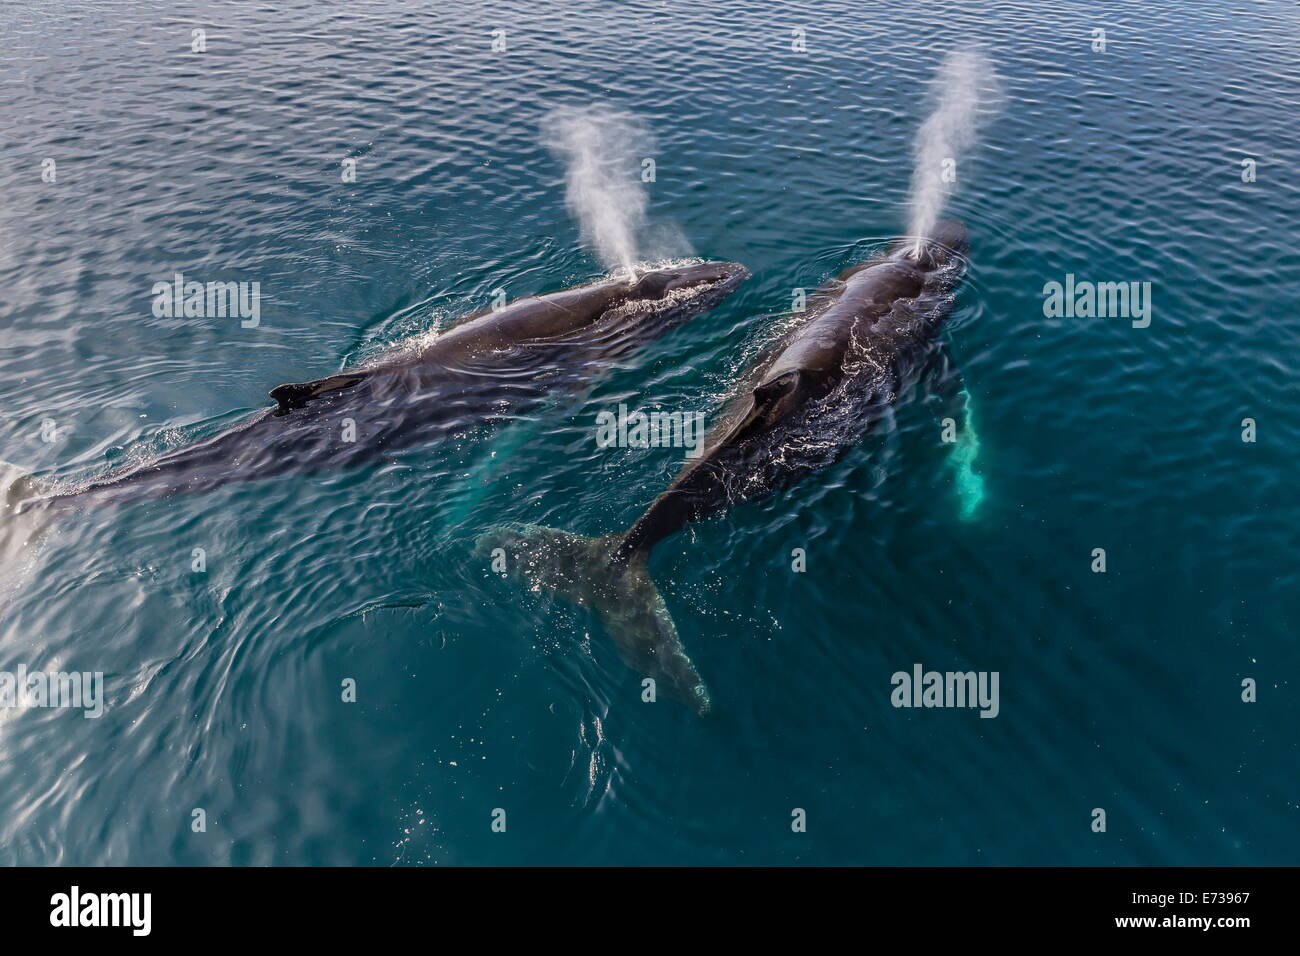 Una coppia di adulti le balene con la gobba (Megaptera novaeangliae), affiorando in stretto di Gerlache, Antartide, regioni polari Foto Stock